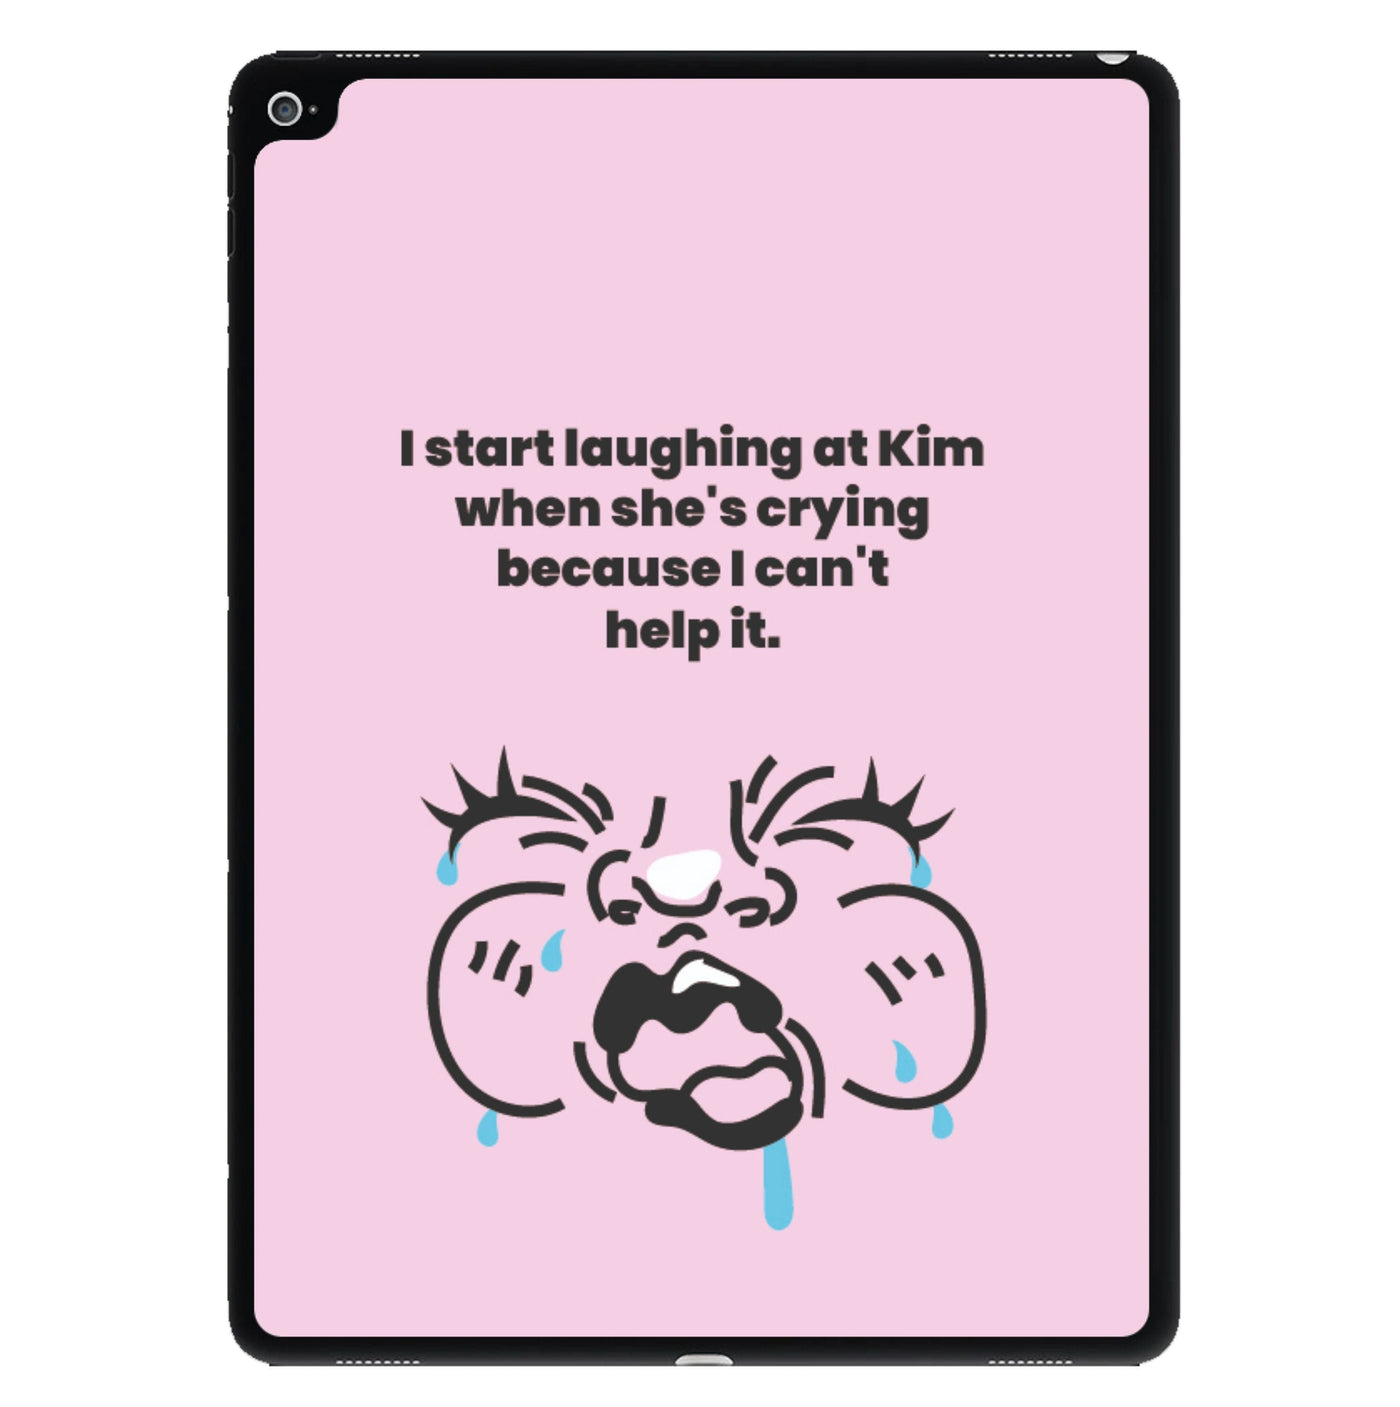 Ugly crying face that she makes - Kourtney Kardashian iPad Case